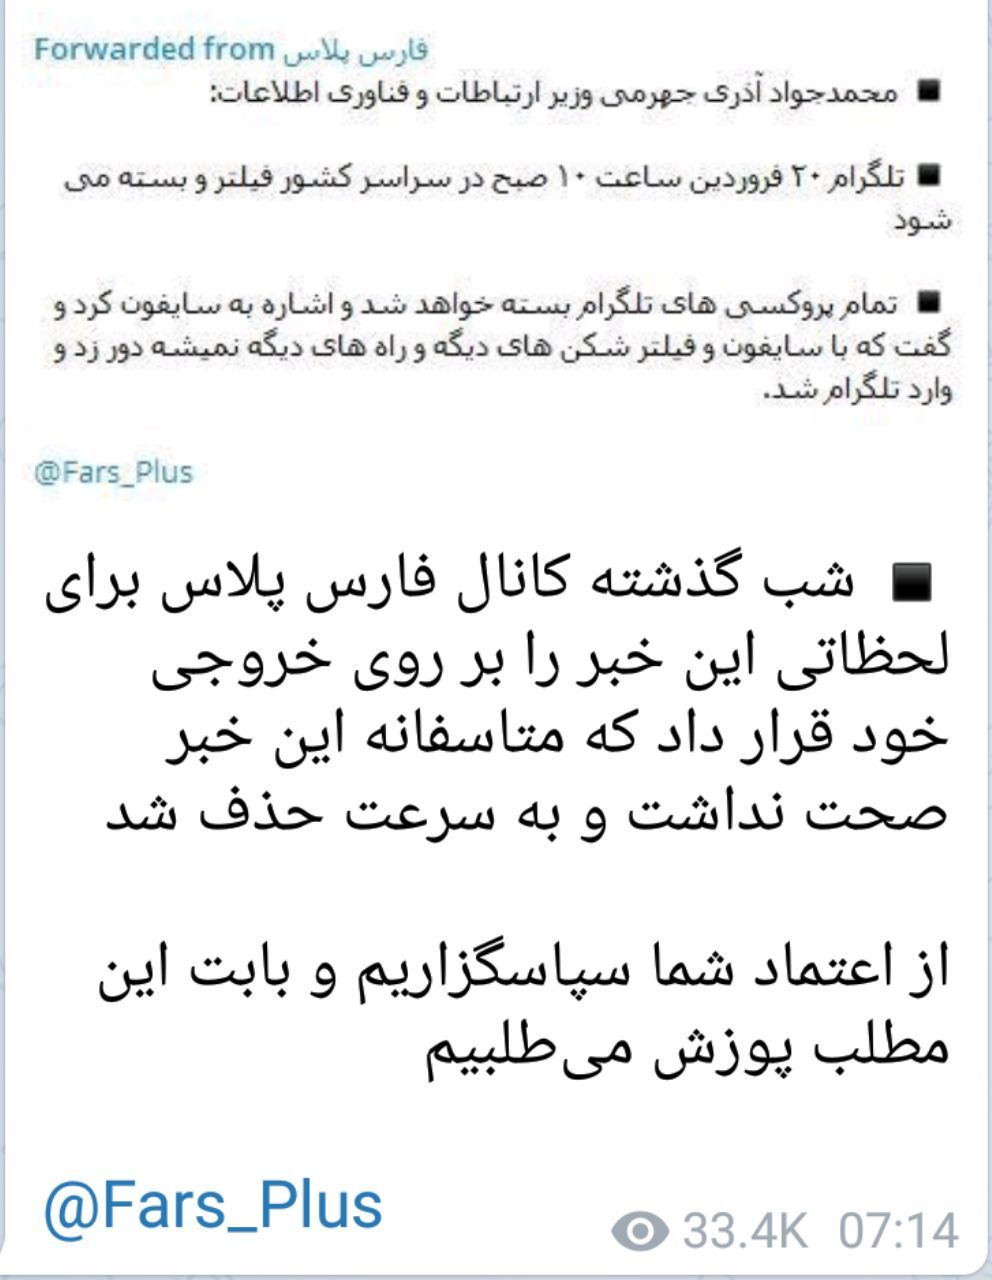 اطلاعیه وزارت ارتباطات در خصوص نقل قول اخبار کذب از آذری جهرمی